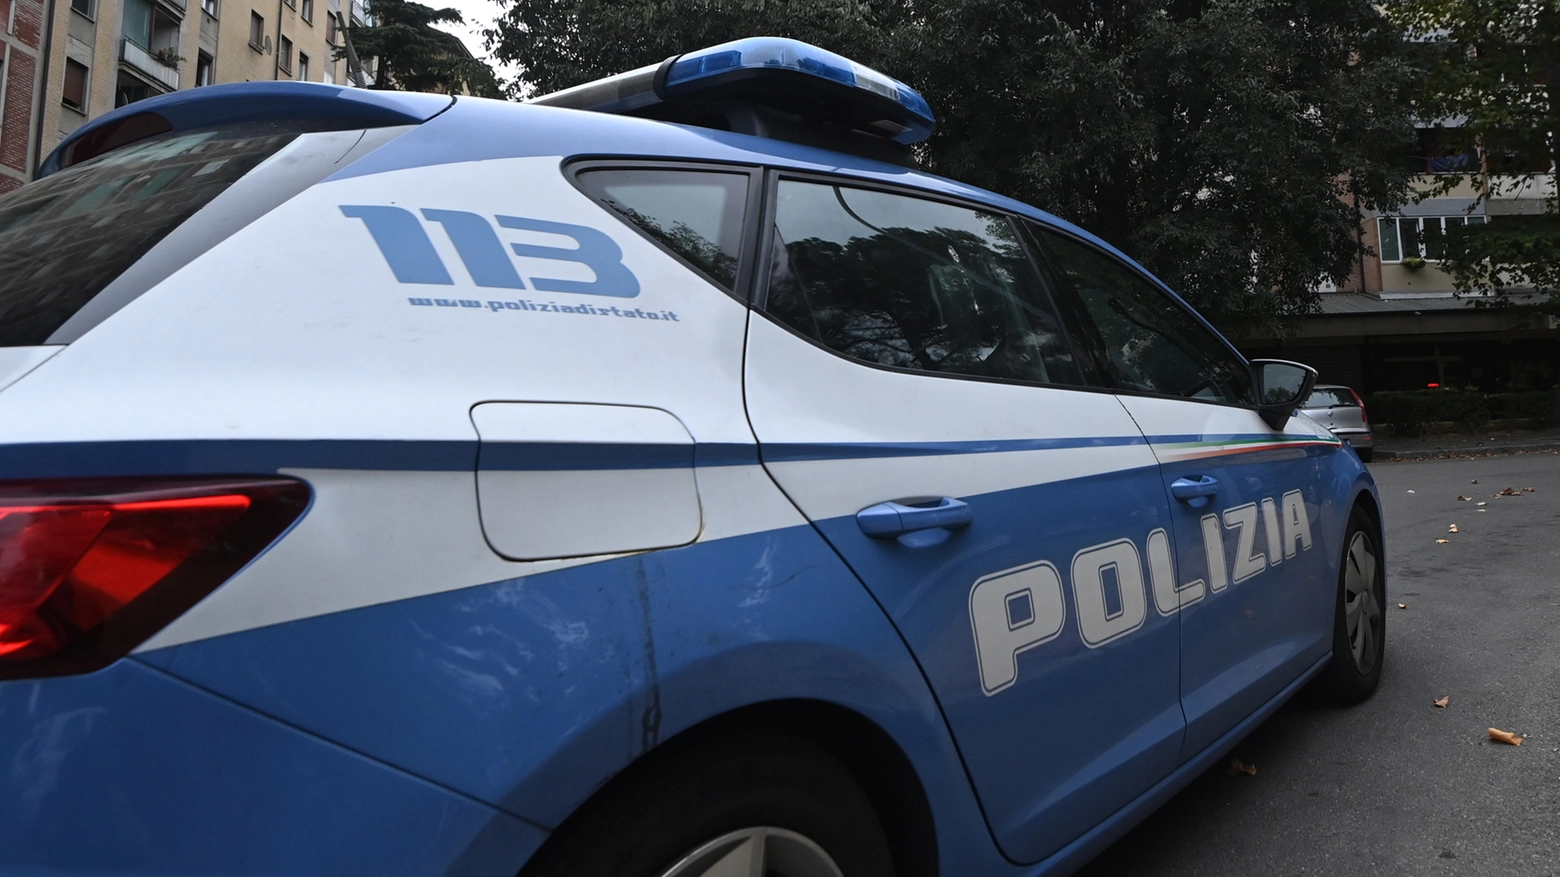 Dopo la segnalazione di furti a Pesaro, sono state inviate pattuglie della Squadra mobile